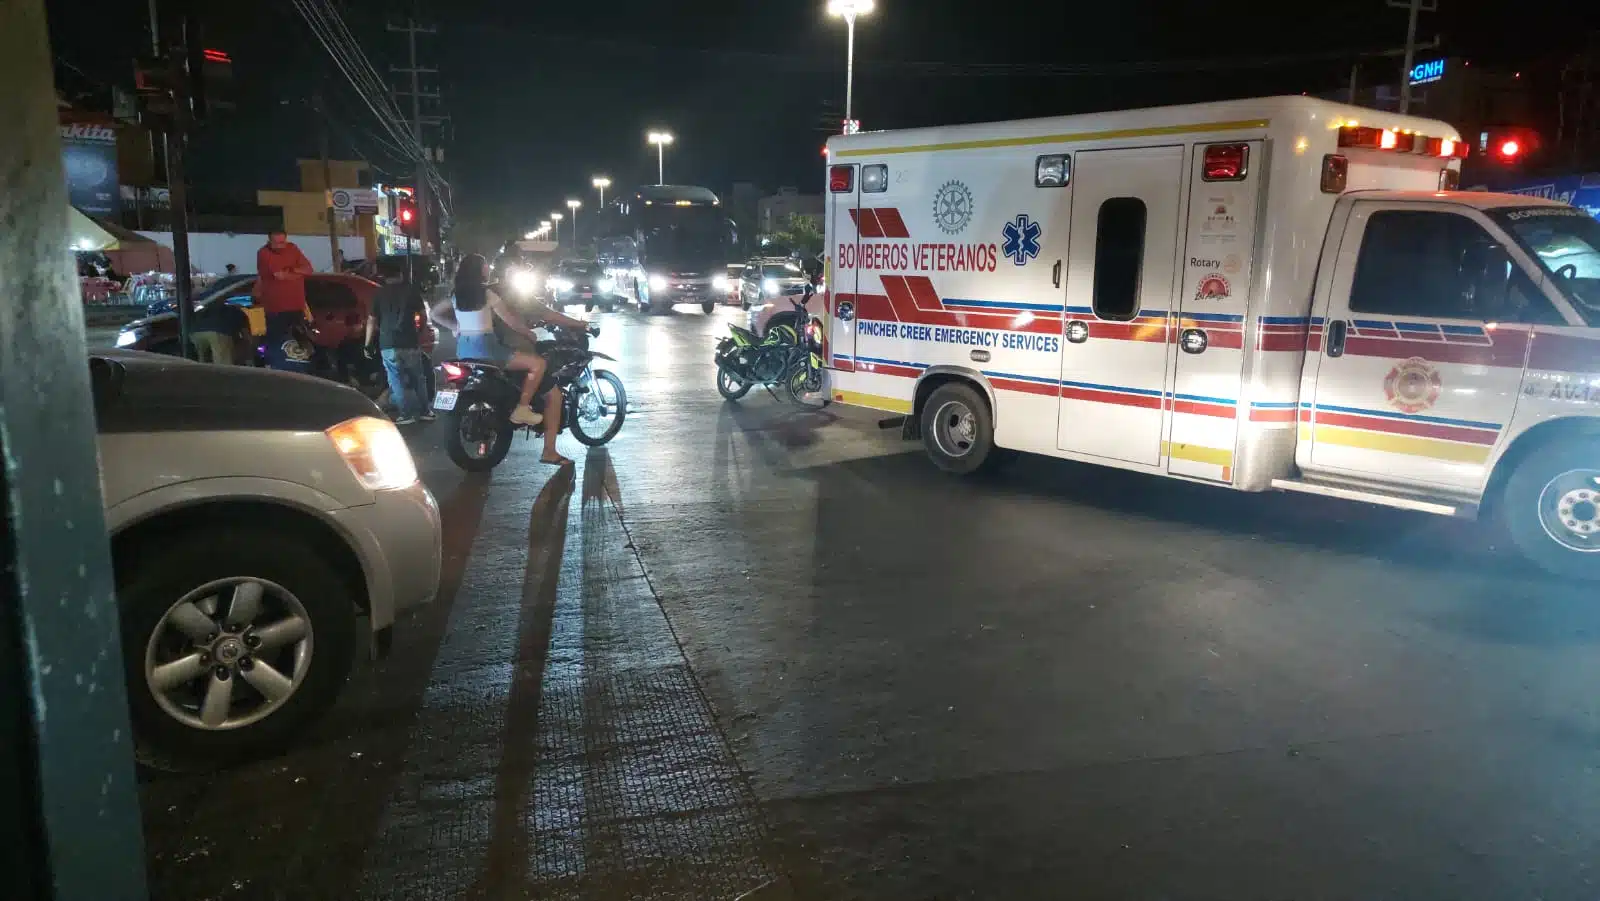 Bomberos Veteranos Mazatlán arribaron al lugar del accidente para atender a los heridos